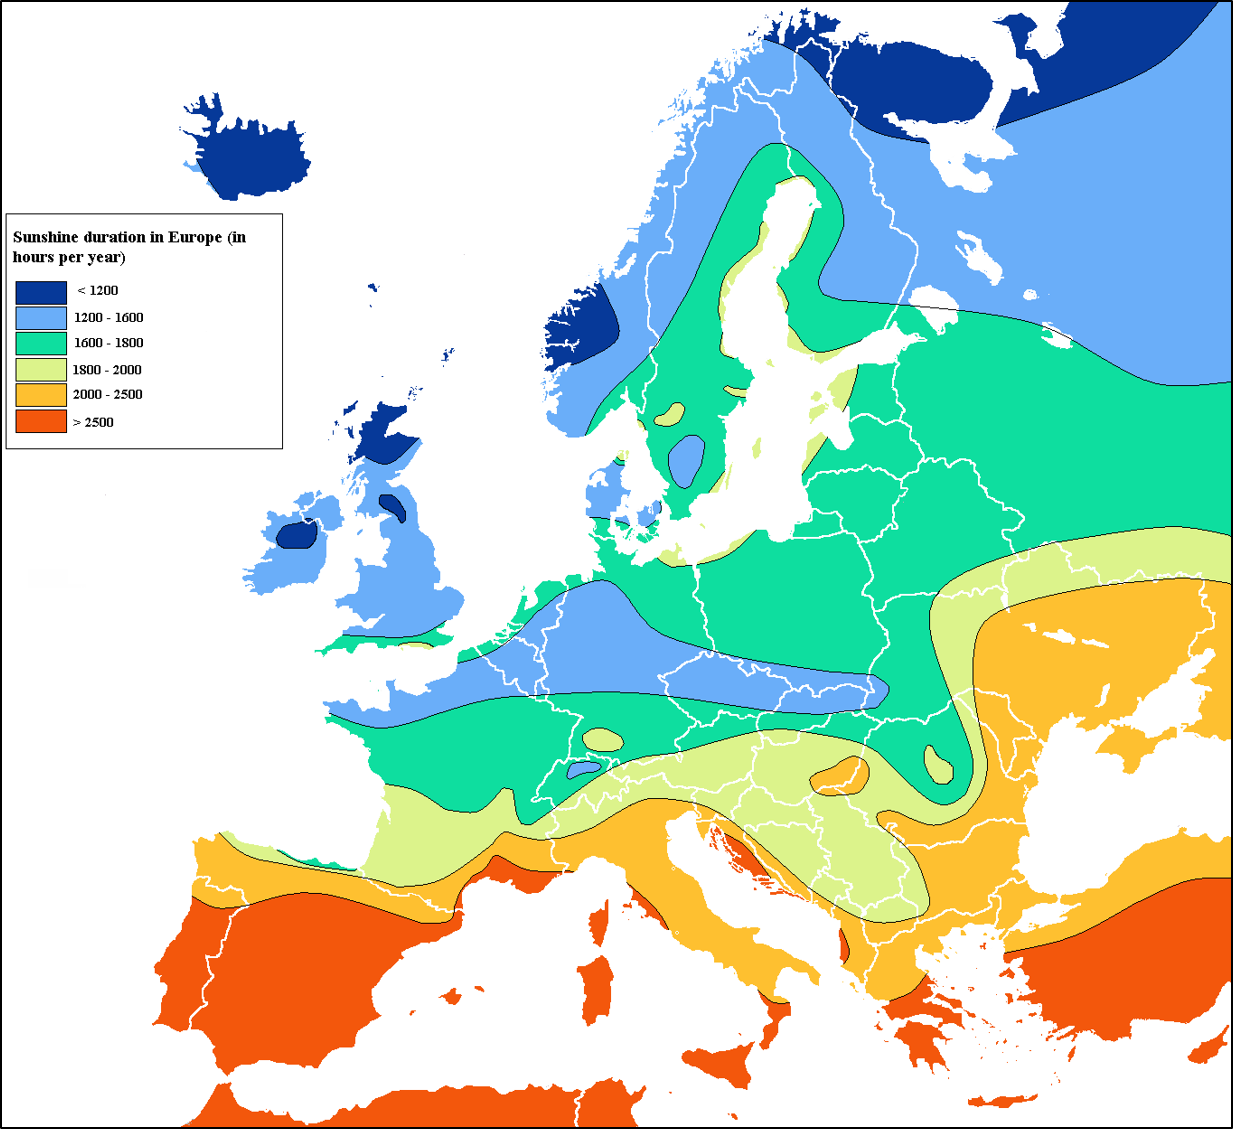 Période d'ensoleillement en Europe, en heures par année. (Source:http://averagemaps.blogspot.com/2013/10/isoline-map.html).